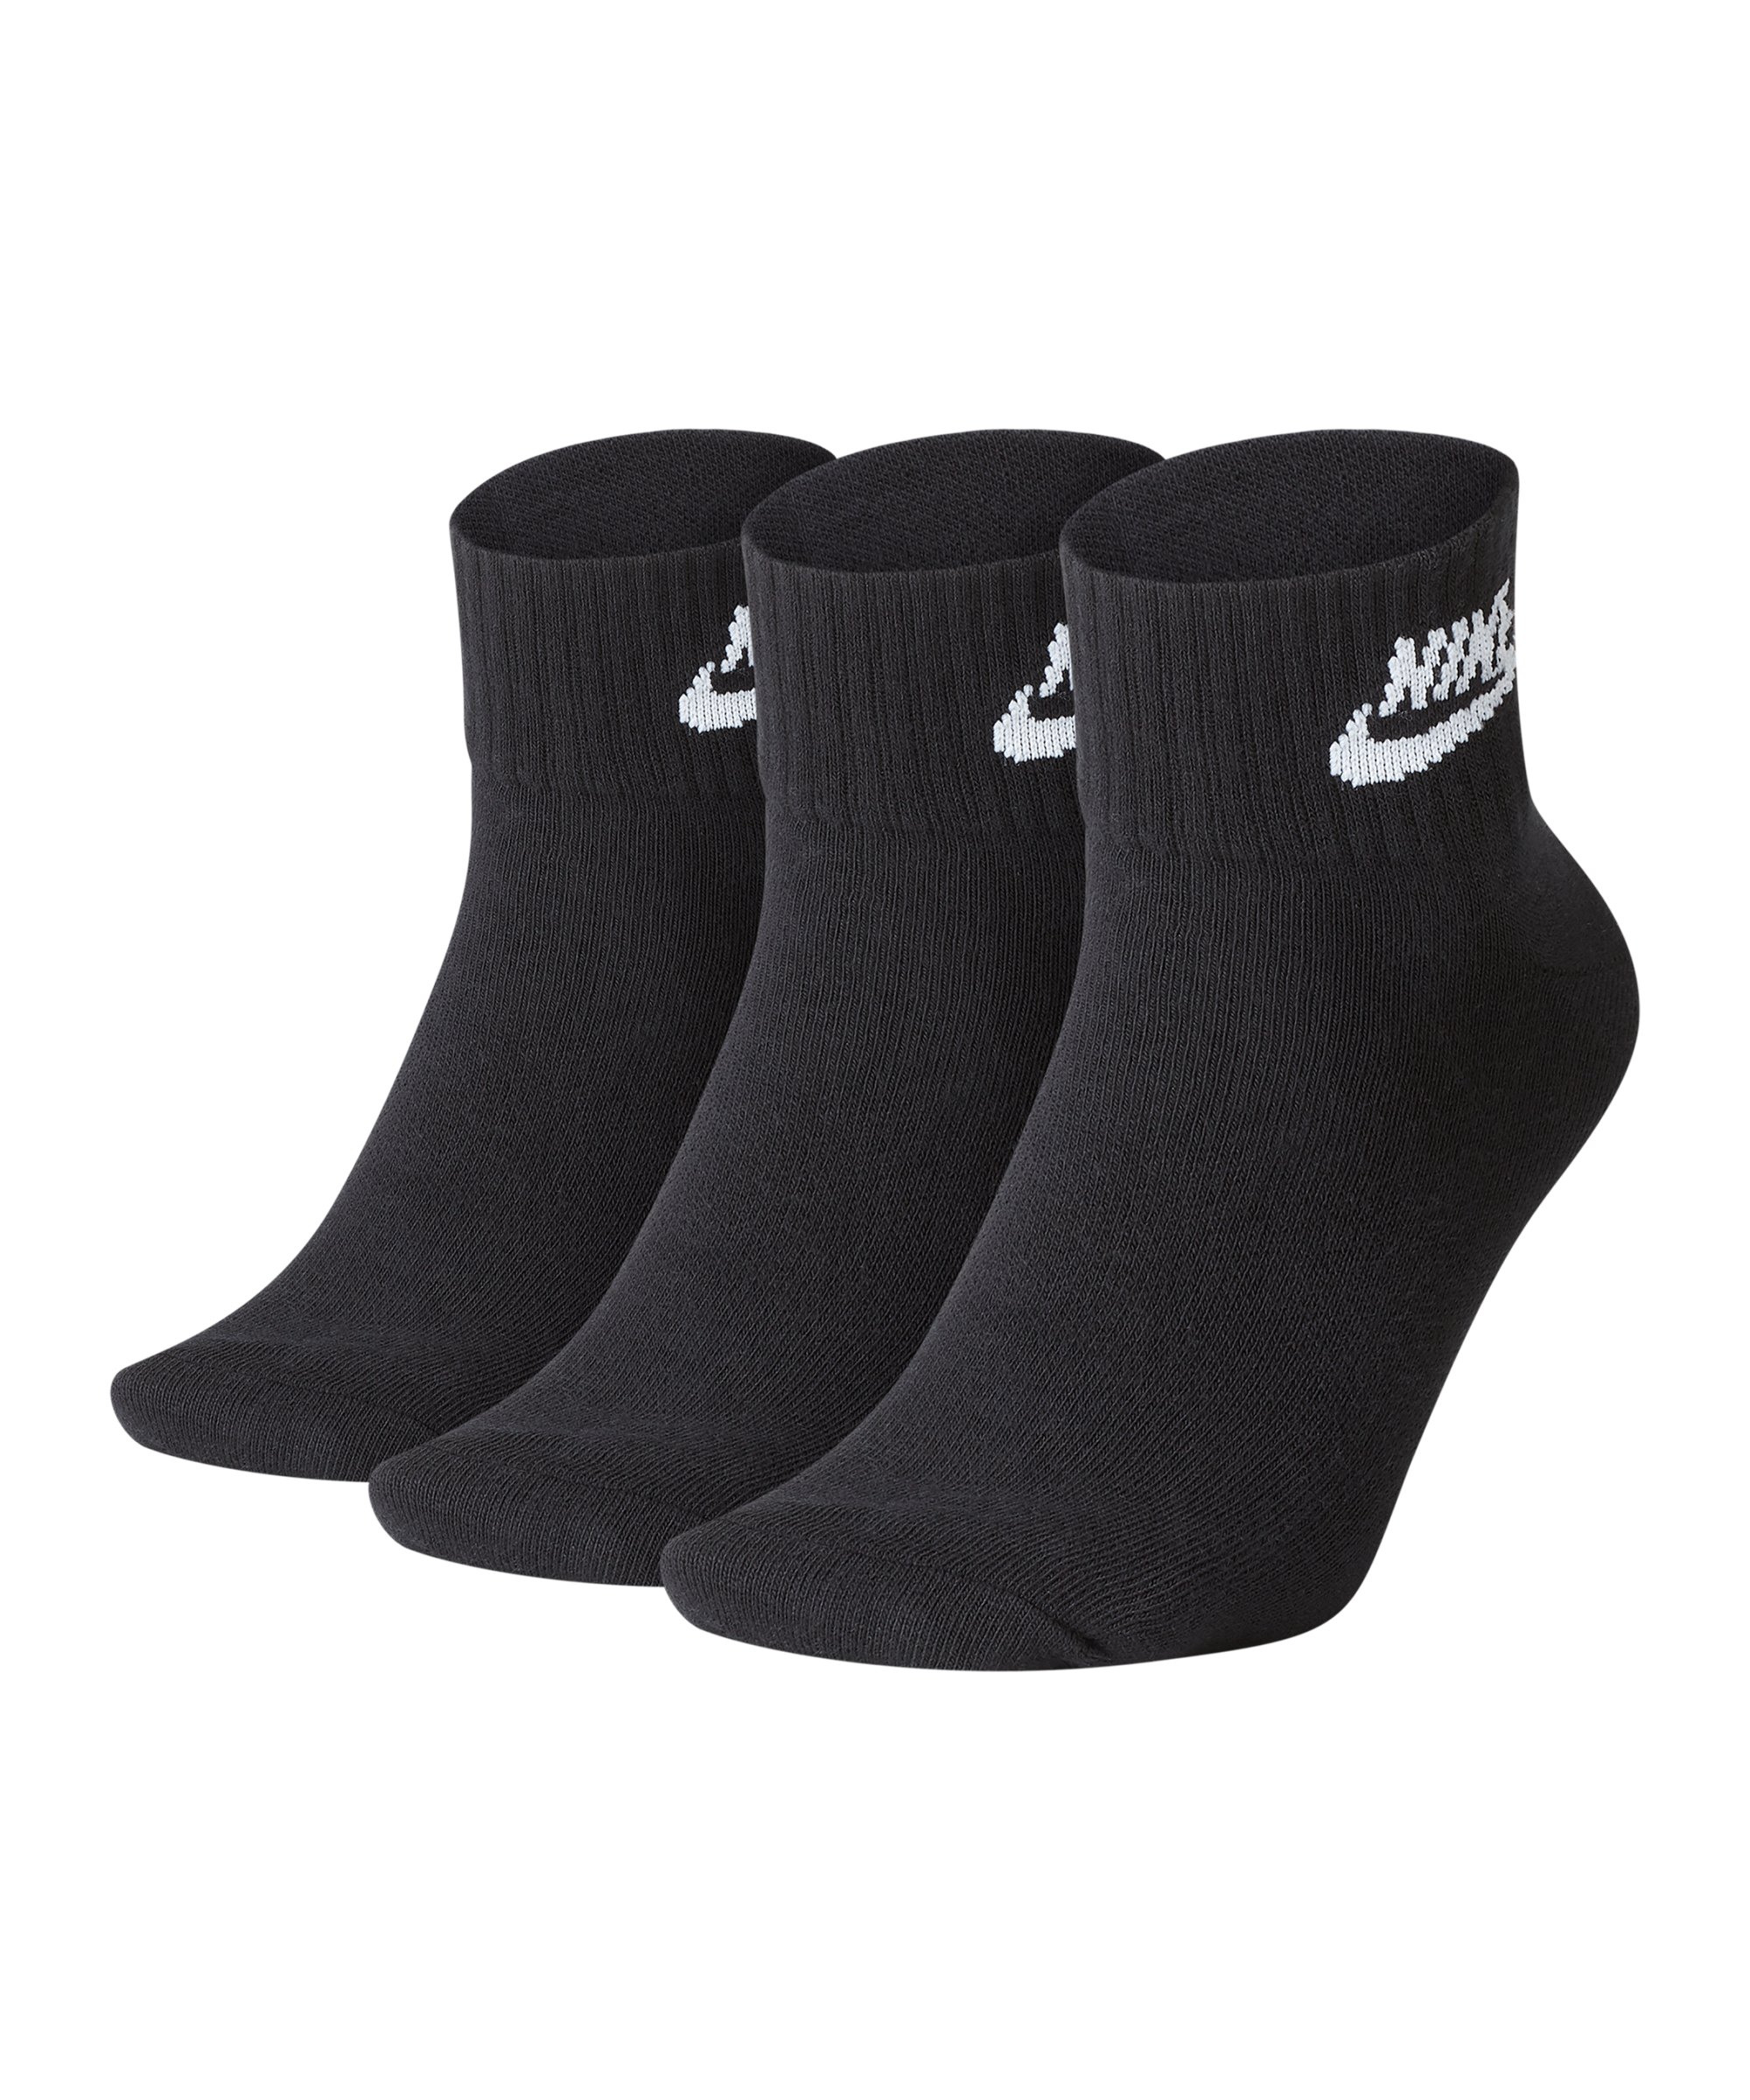 Nike Every Essential Socken 3er Pack Schwarz F010 - schwarz